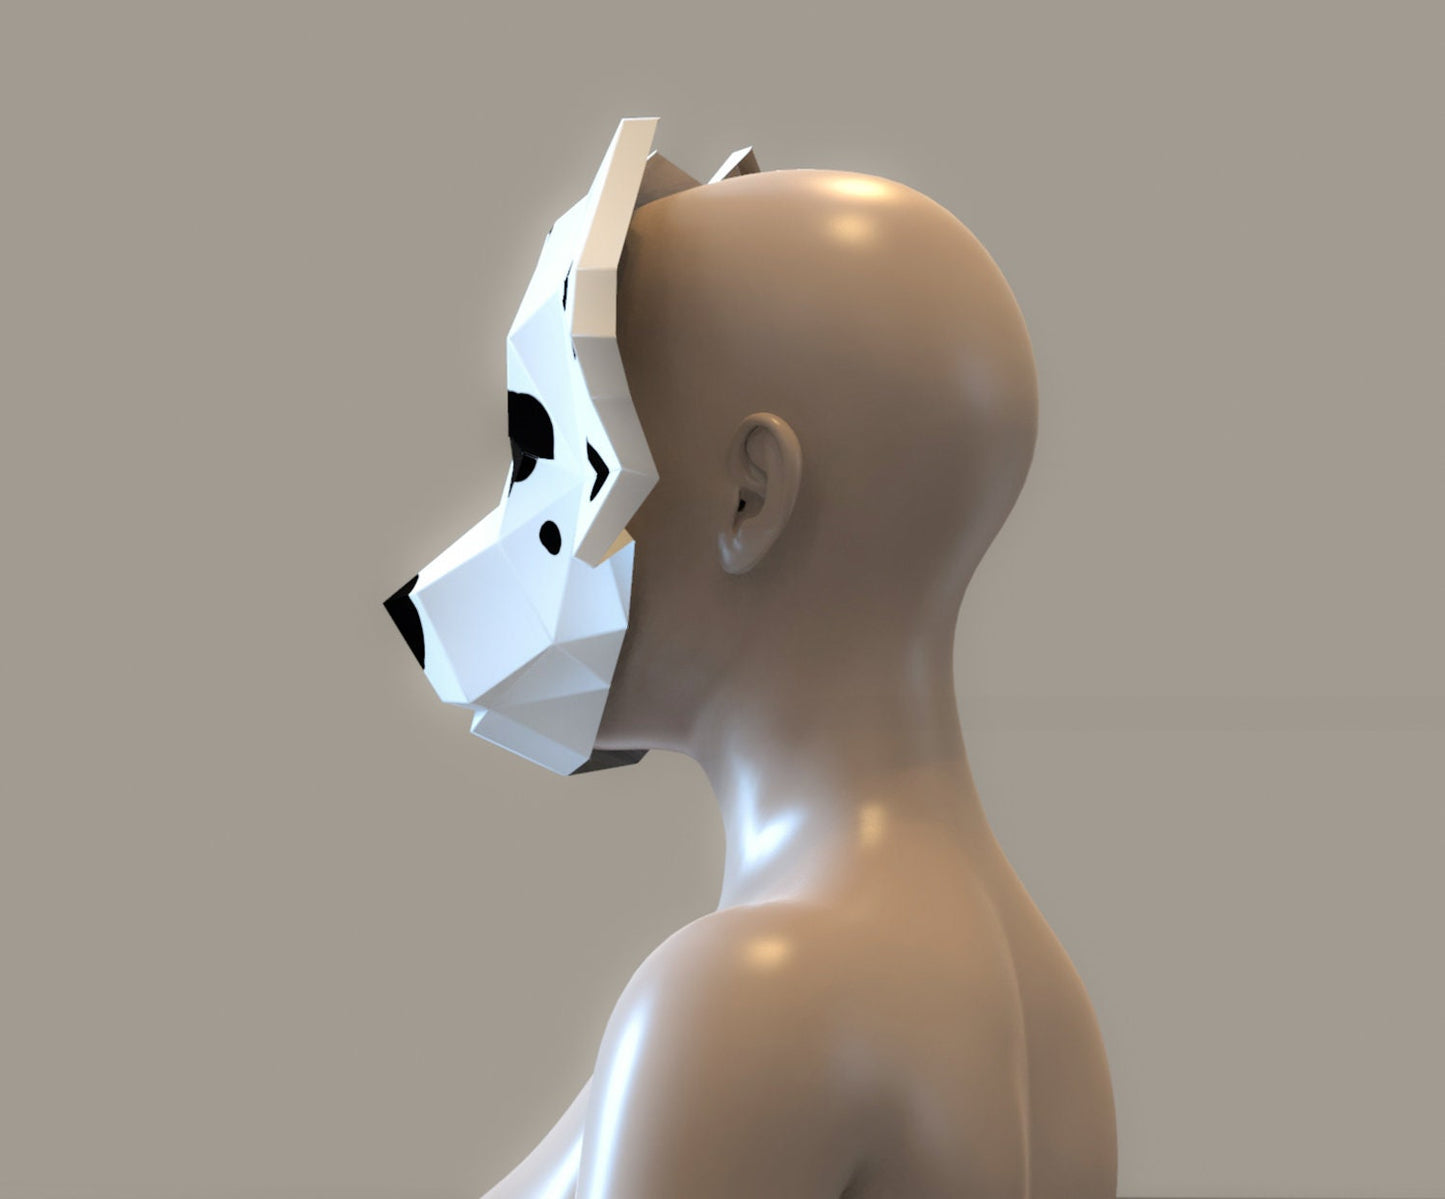 Dog mask